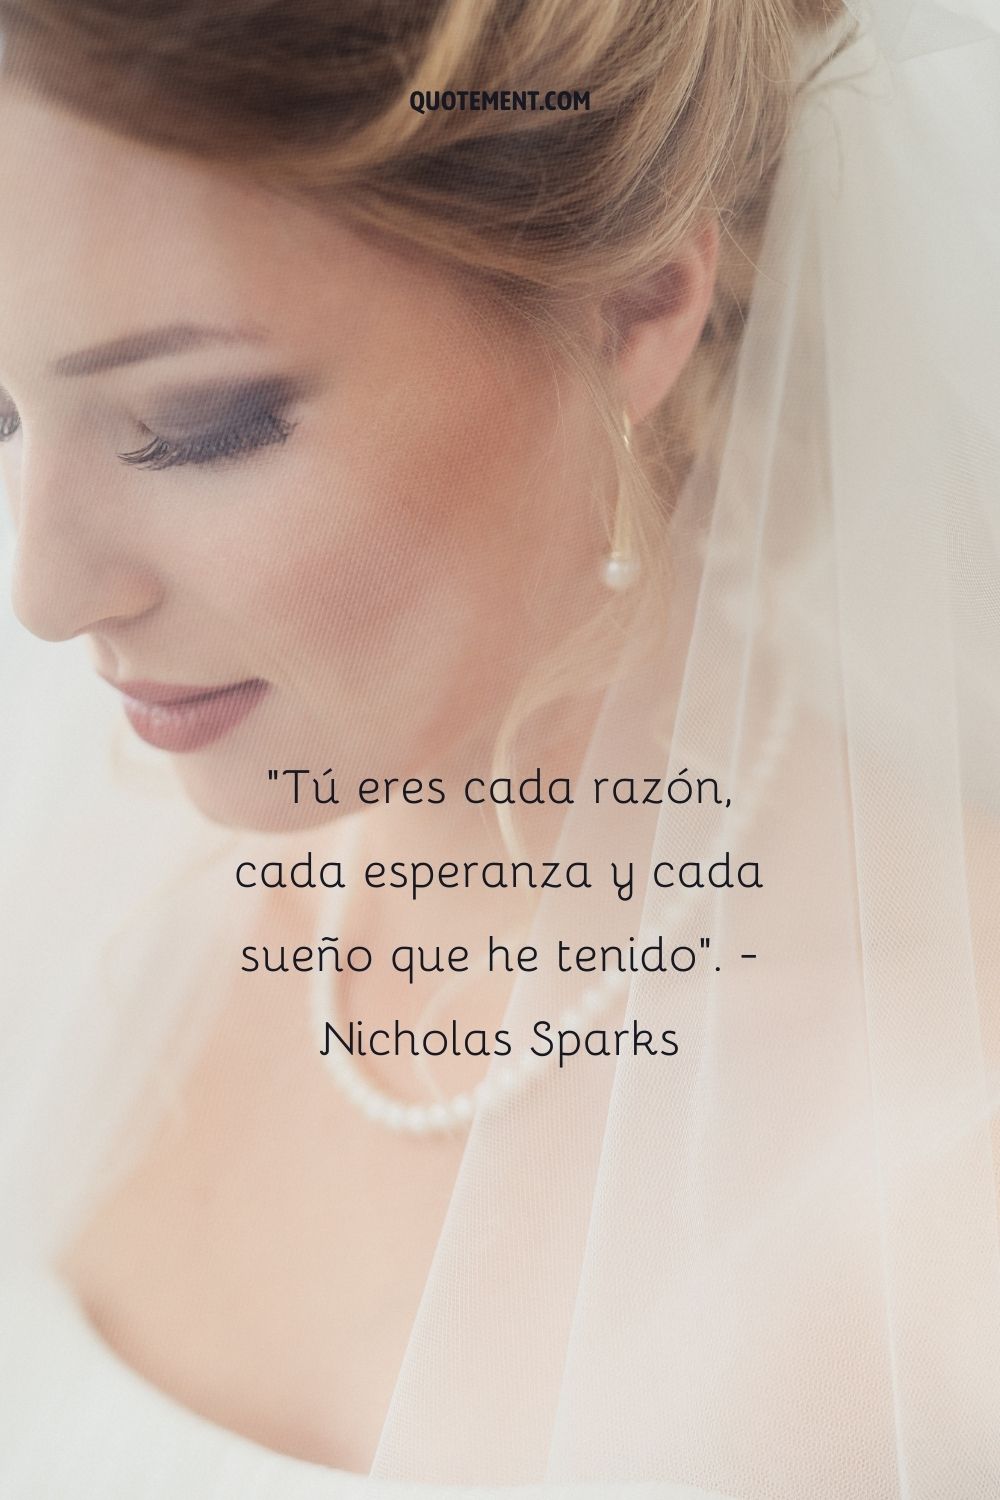 "Eres cada razón, cada esperanza y cada sueño que he tenido". - Nicholas Sparks